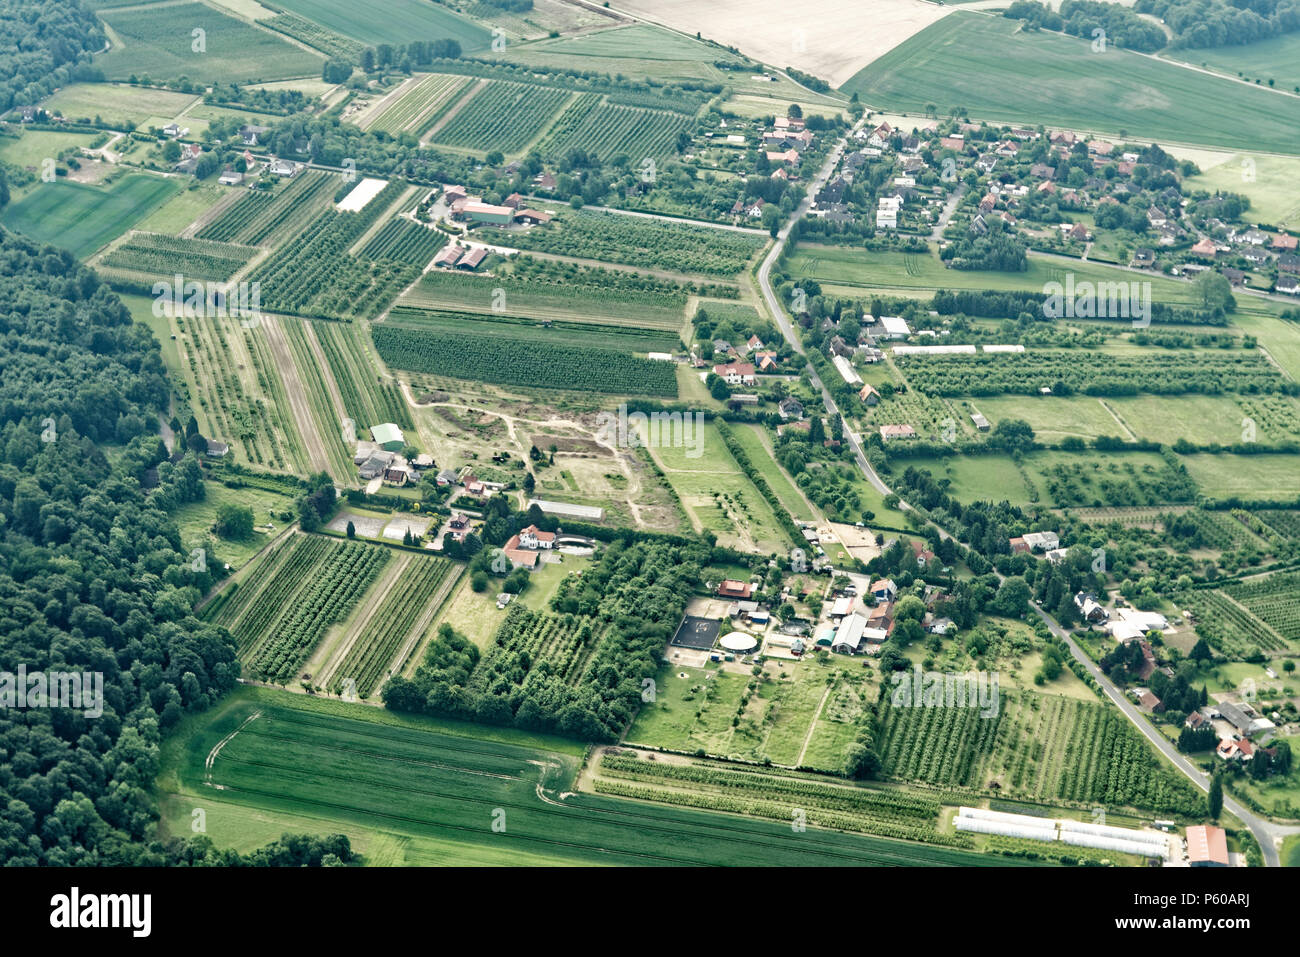 Proliferazione urbana nel nord della Germania con piccole superfici agricole, strade, case, le imprese commerciali e incoerente dei boschi, vista aerea Foto Stock